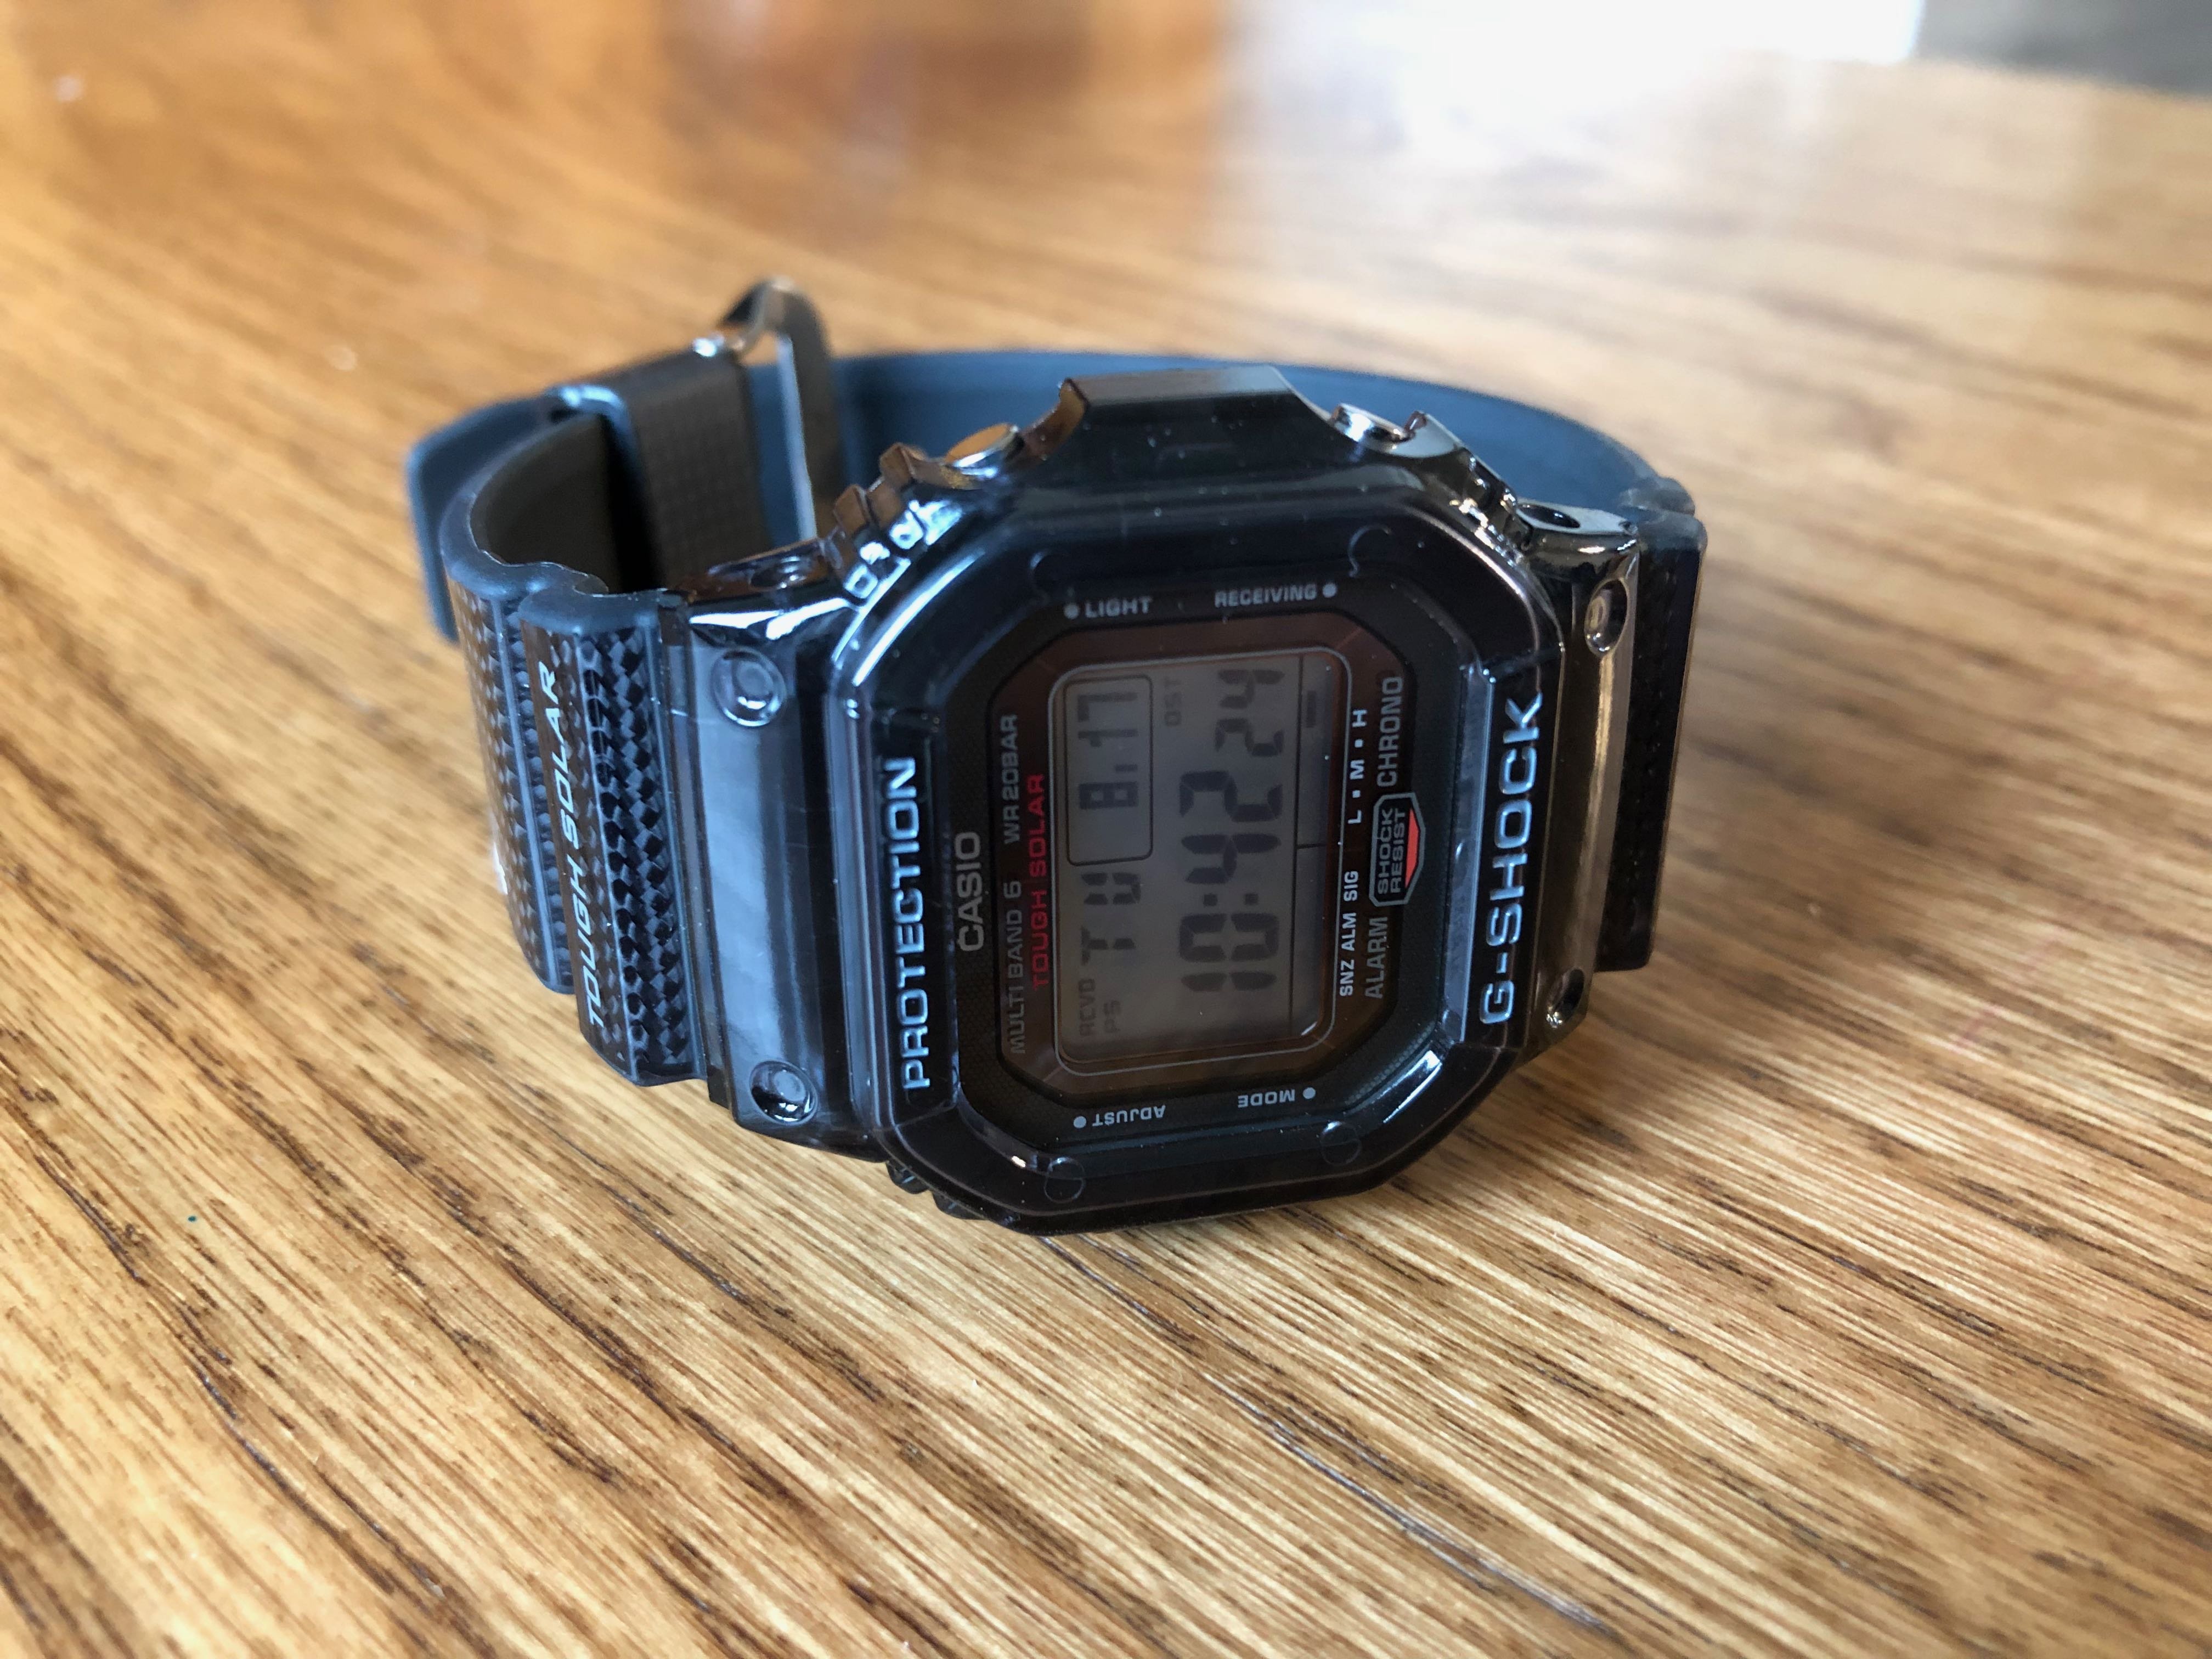 腕時計カシオ G-SHOCK  GW-S5600U-1JF 正規品